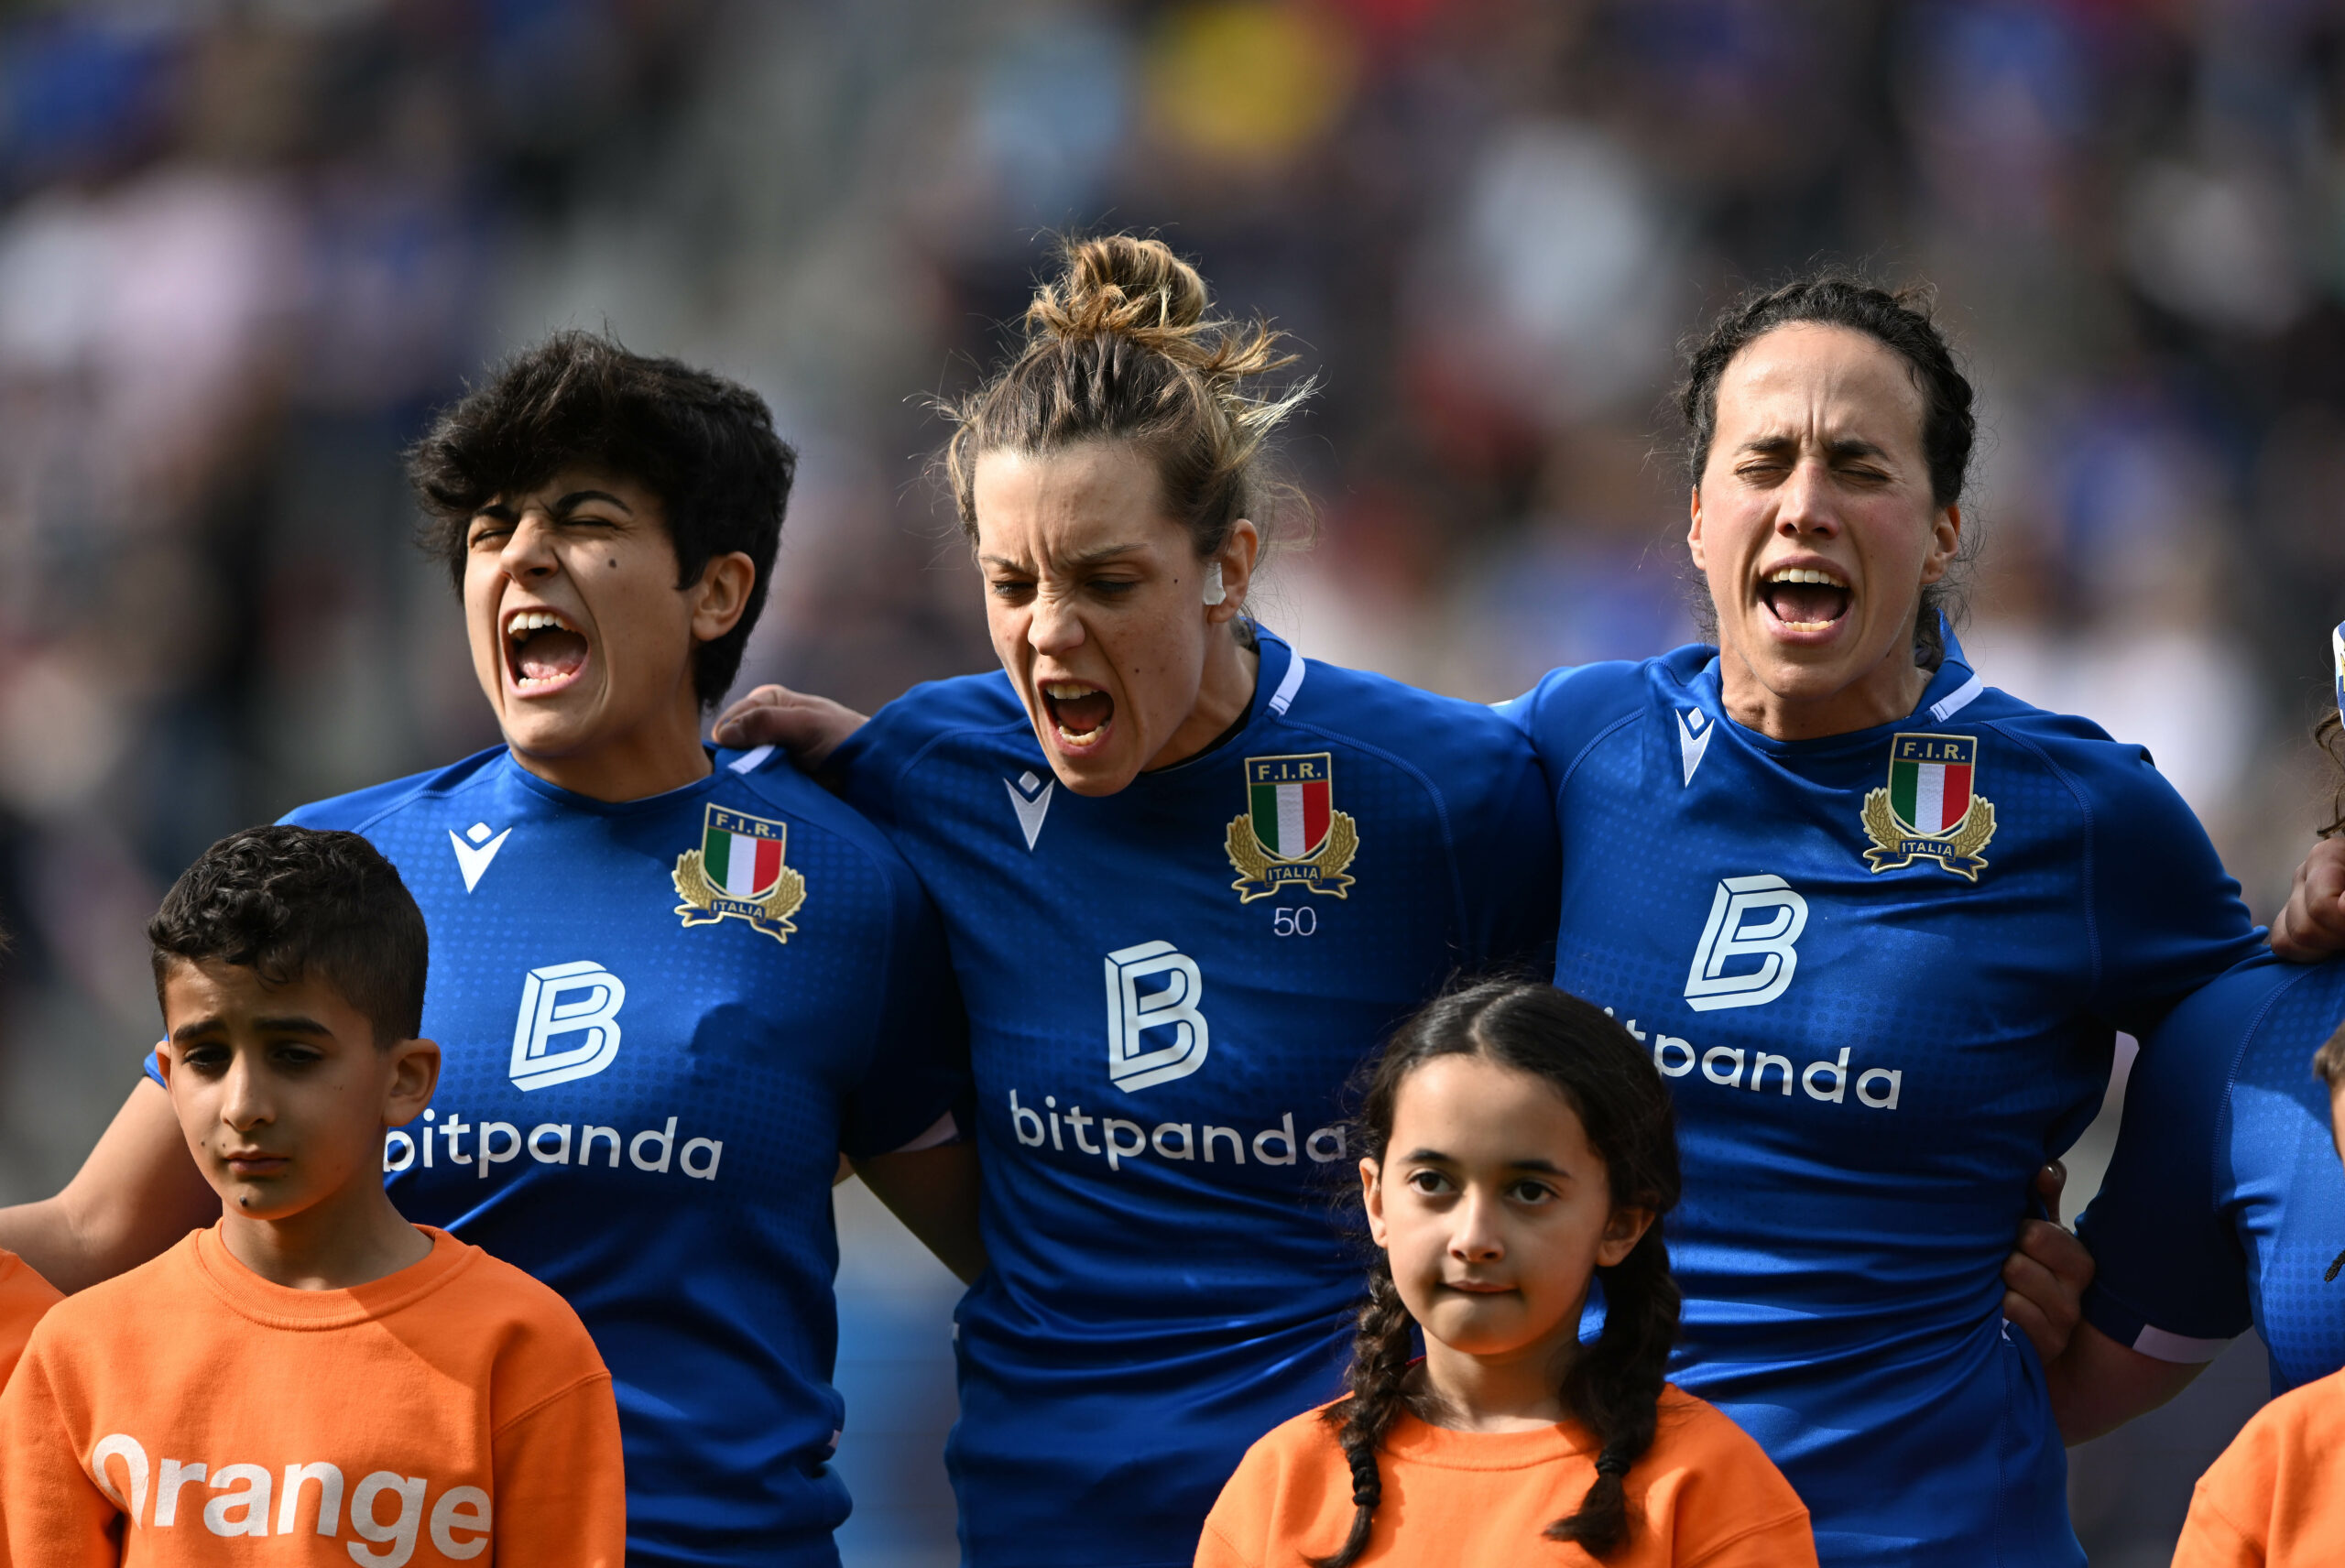 Italia femminile, Giordano: "L'obiettivo è la semifinale" (Photo by Federugby/Getty Images)